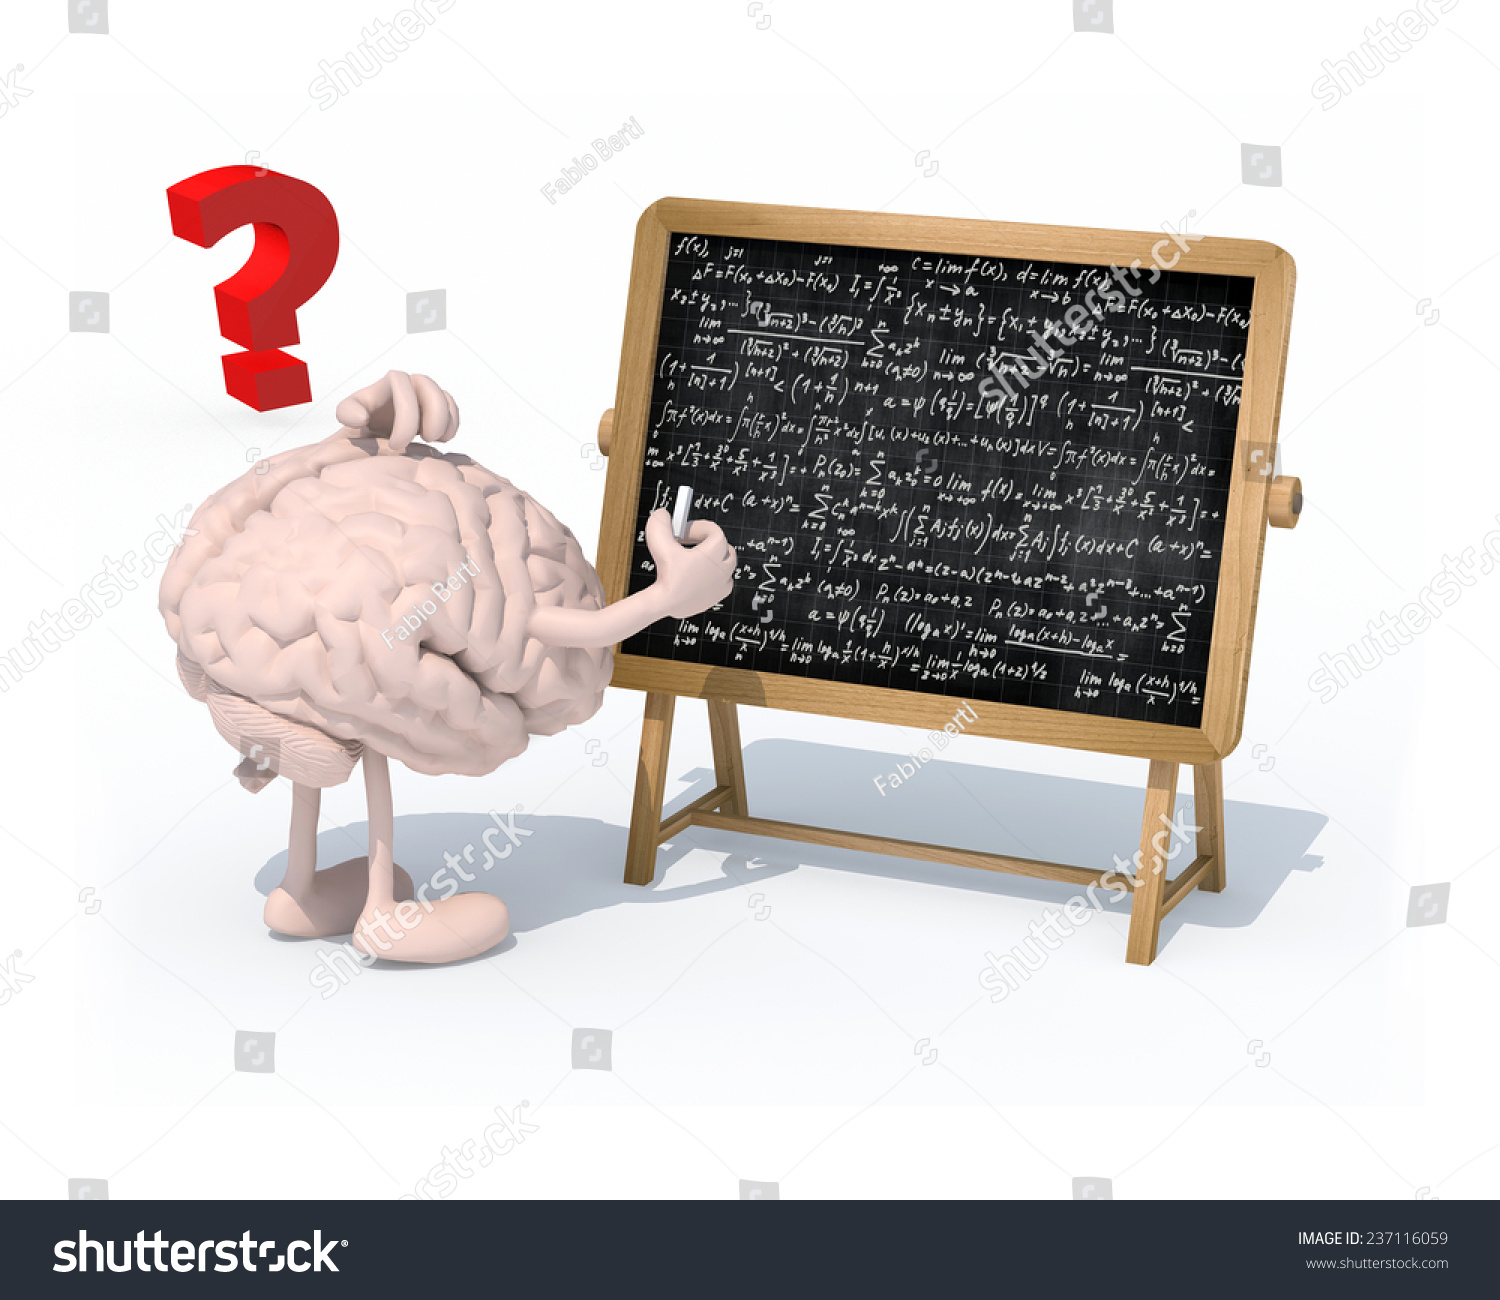 大脑与胳膊、腿和粉笔在黑板面前手上的数学公